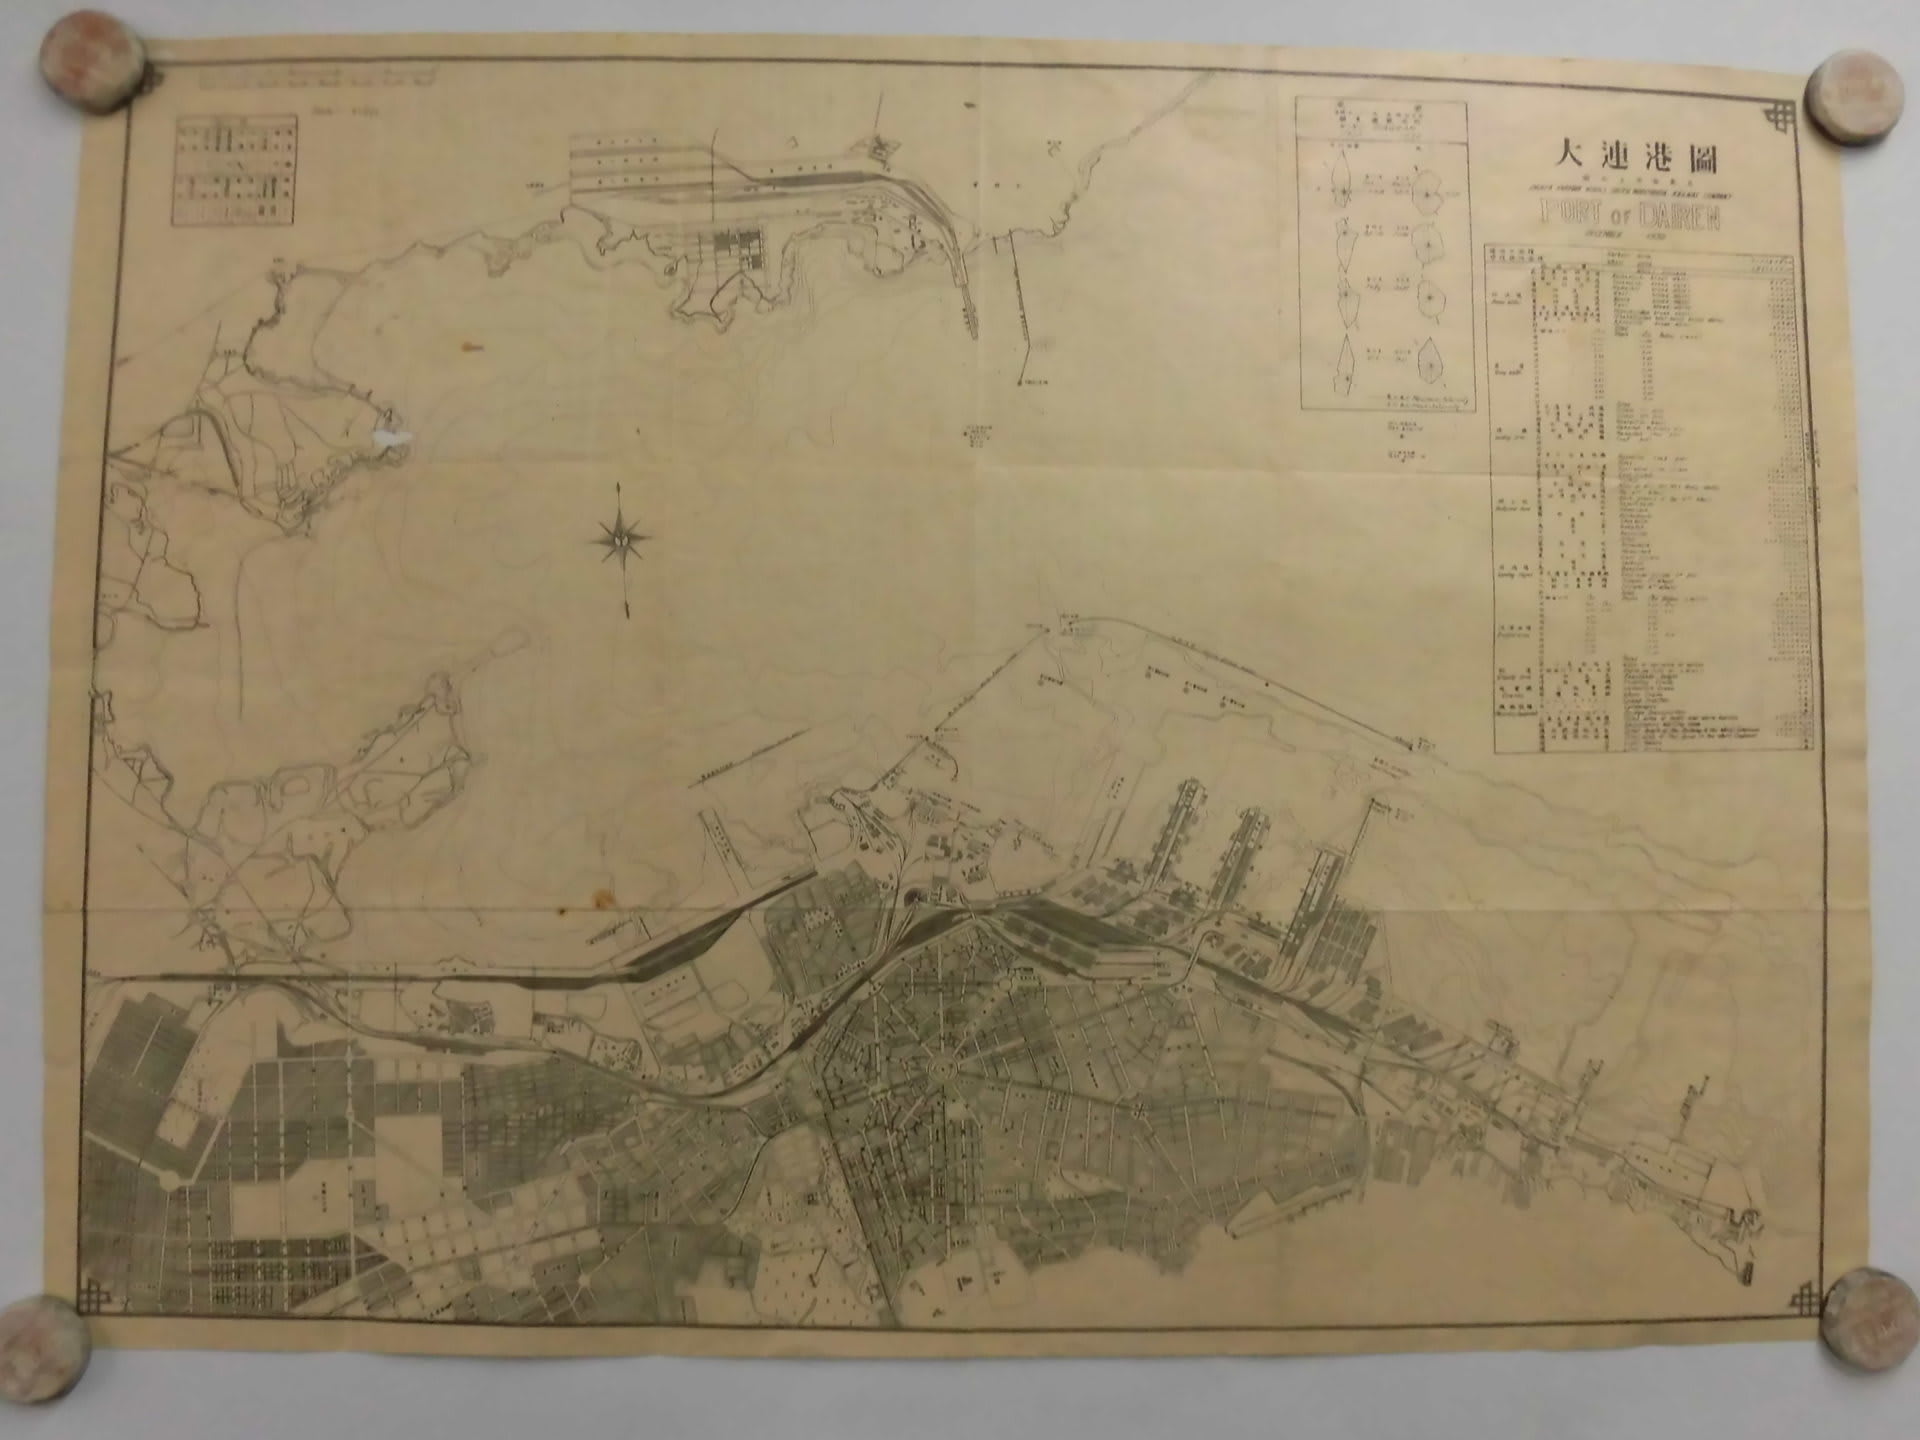 旧満洲國 大連港圖 年代不詳 - 新日本古地図学会